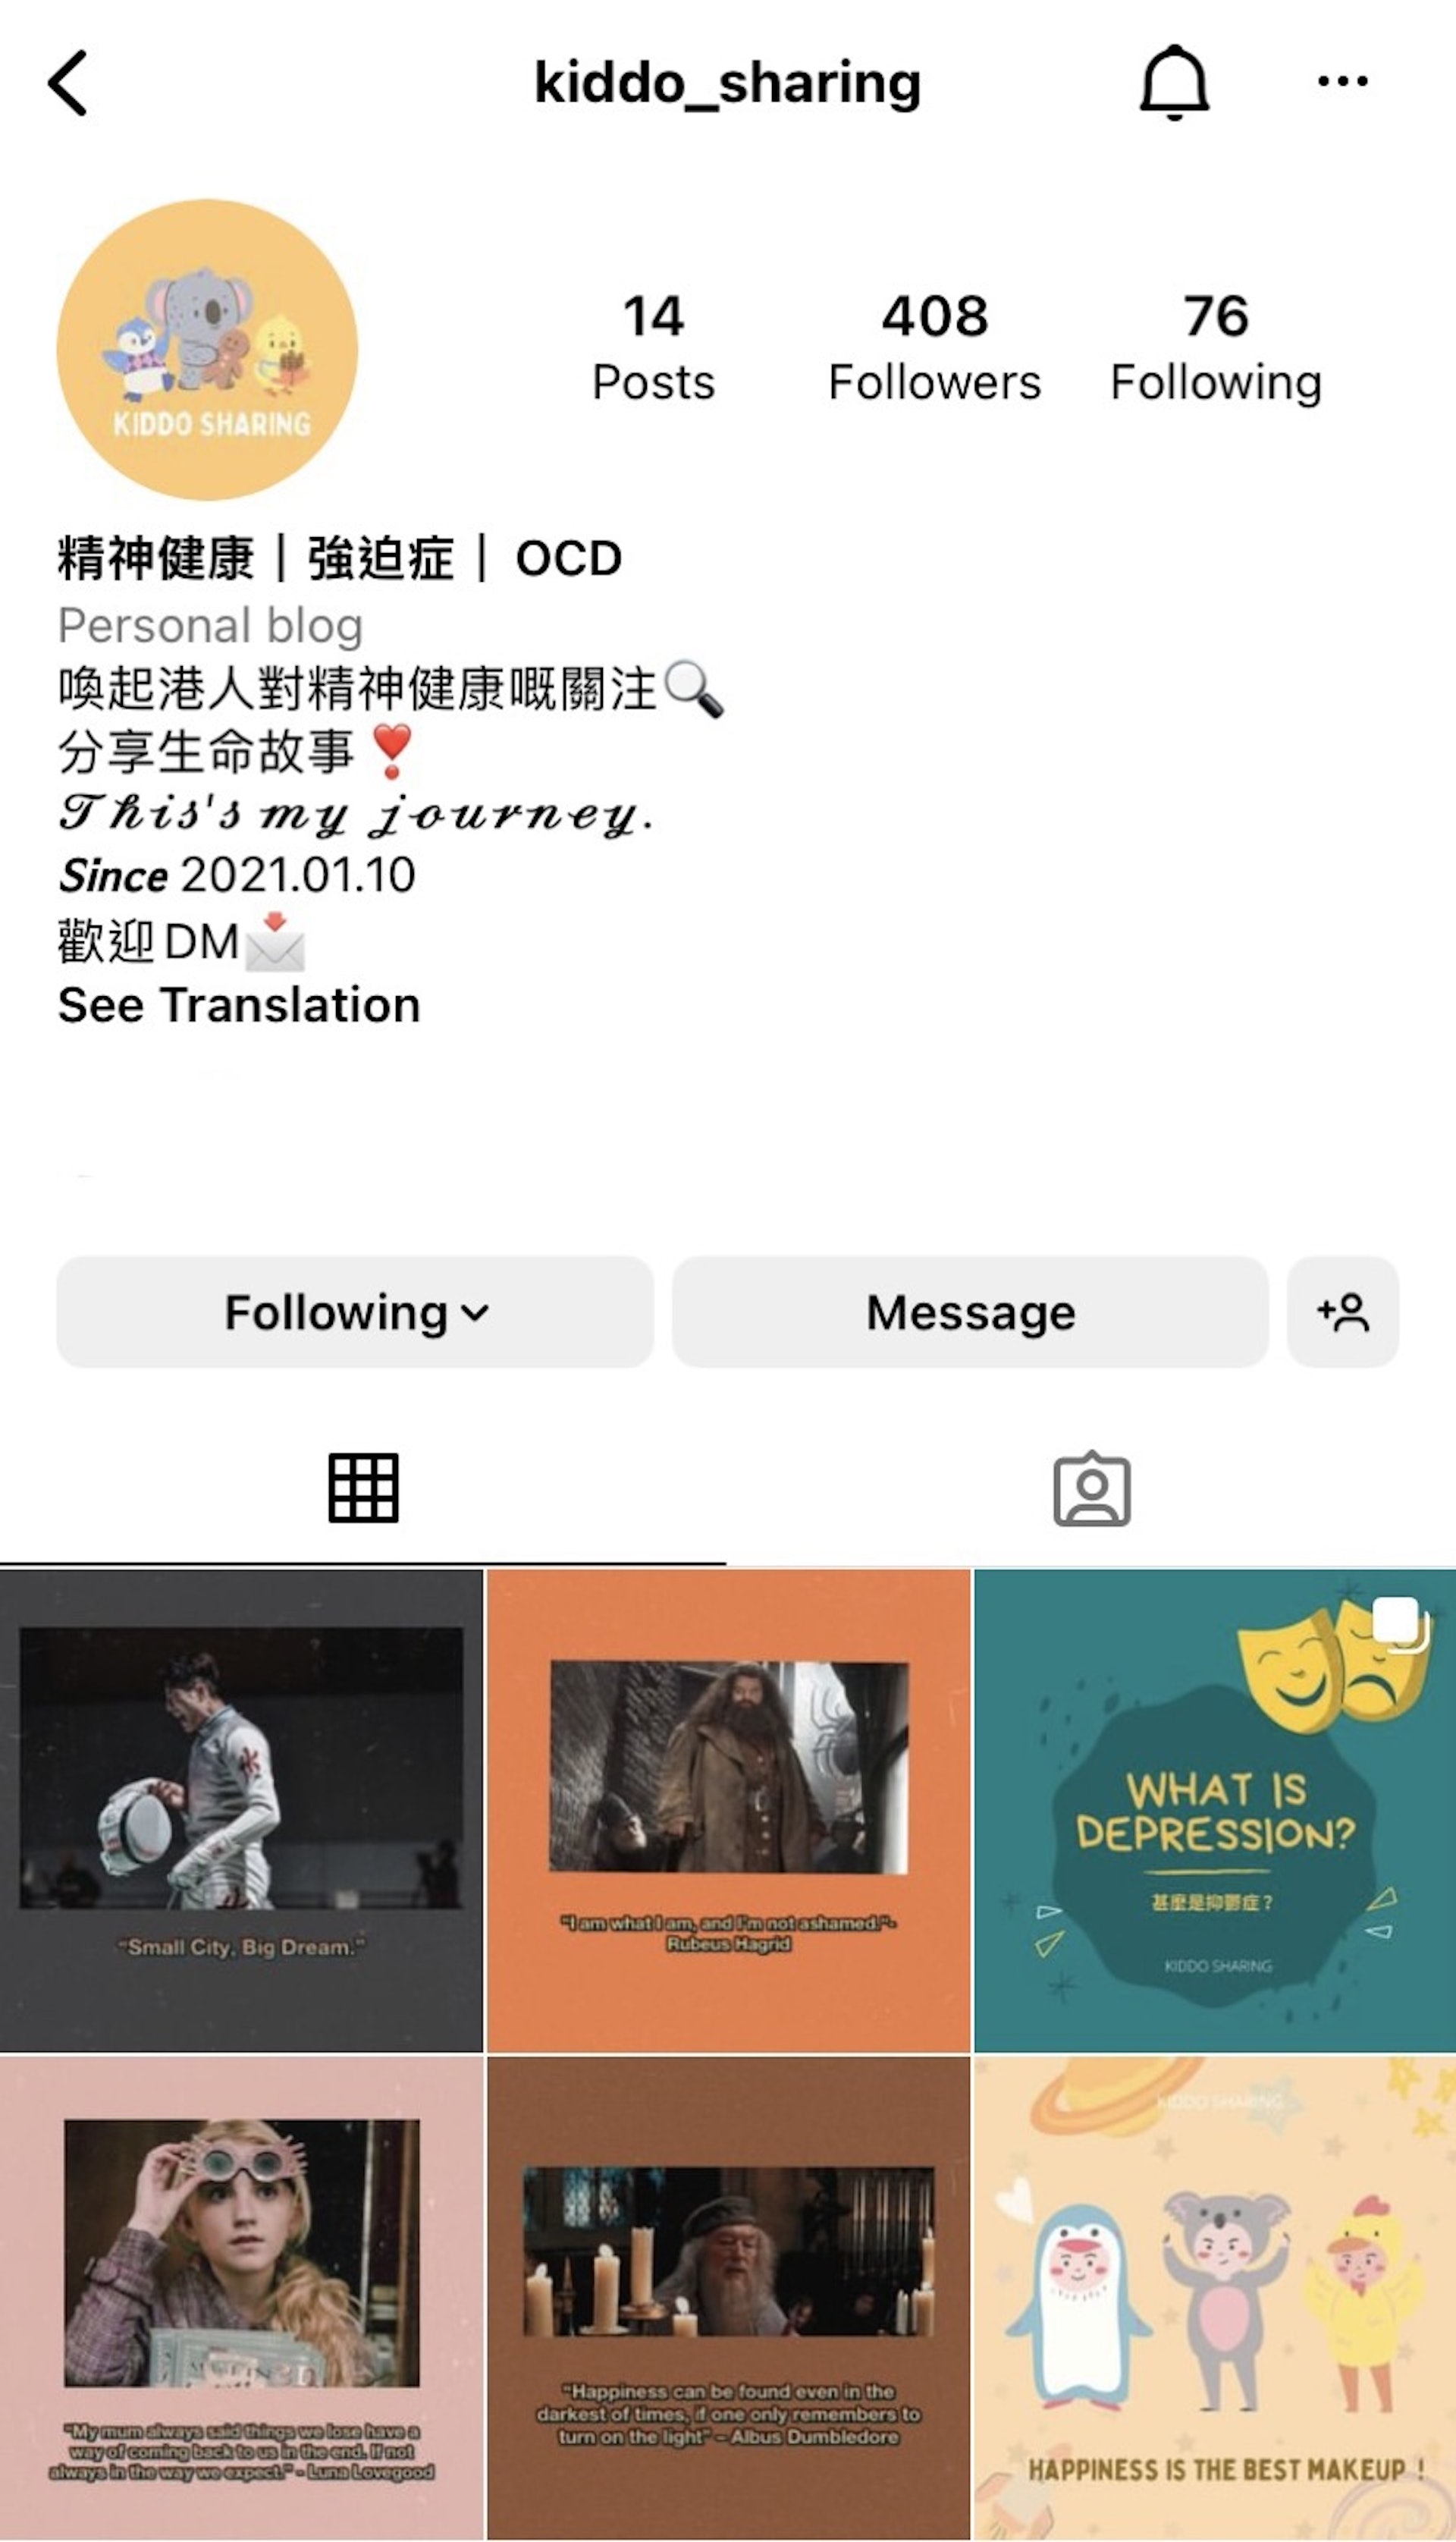 S小姐自發開啟了有關於強迫症的IG page ，望喚起香港人對抑鬱症的注意。
(IG @kiddo_sharing)